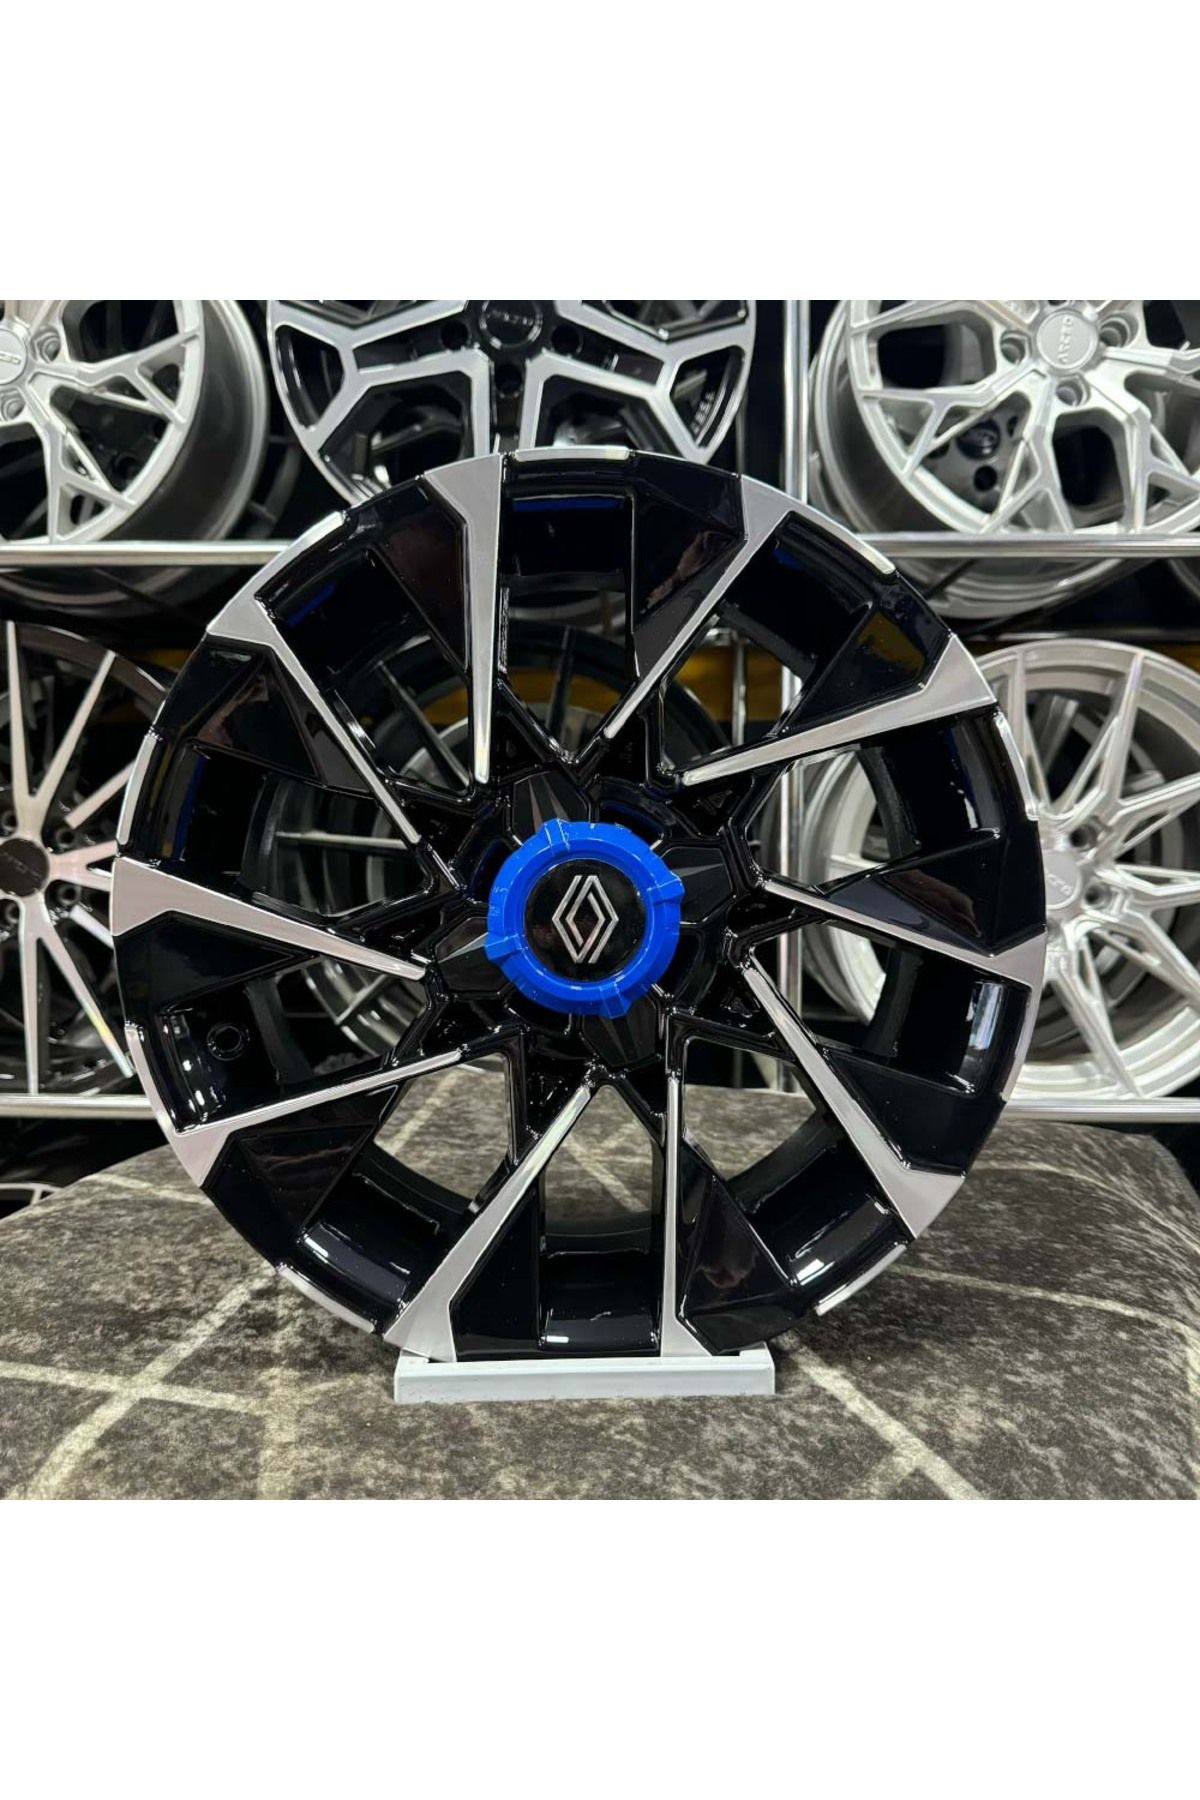 Kormetal 15" (inç) 4x100 CLİO 6 TECHNO ESPRİT ALPİNE Uyumlu Siyah Elmas Kesim Jant Modeli Renault clio